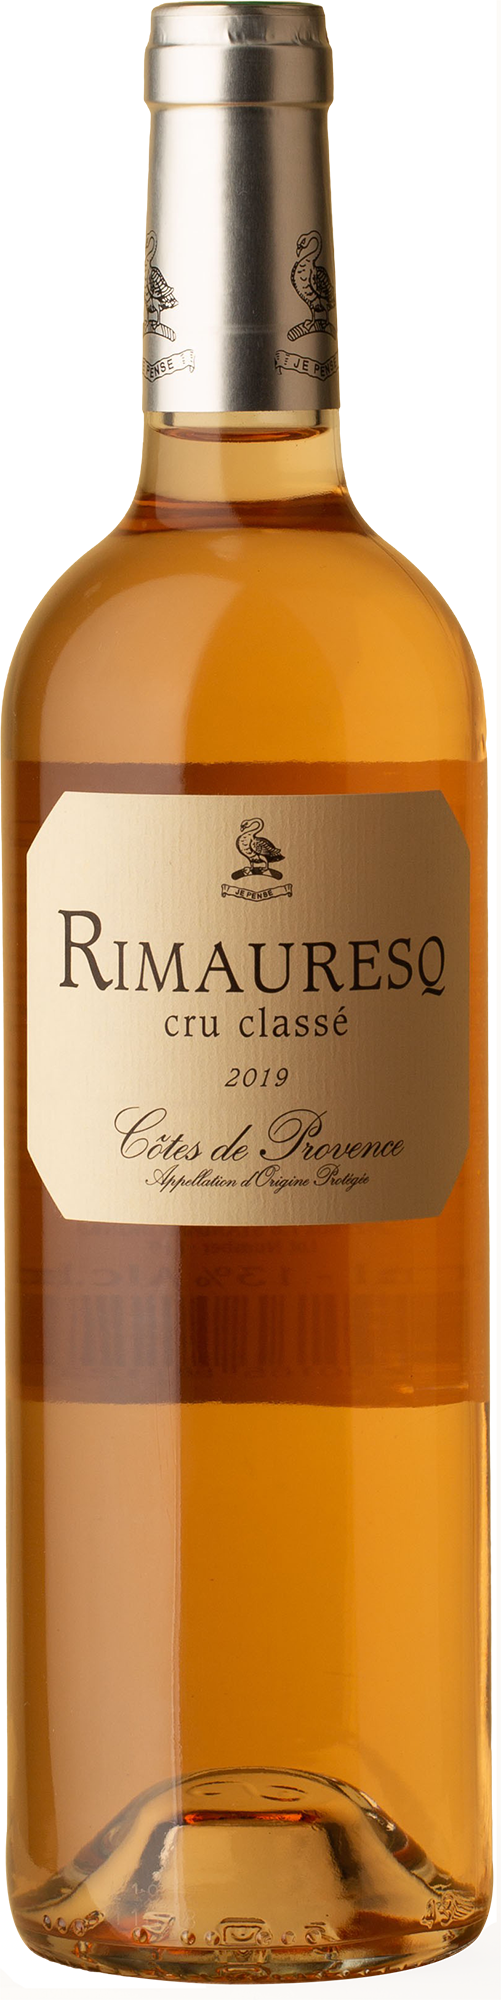 Rimauresq - Côtes de Provence Cru Classé Rosé 2019 Rosé